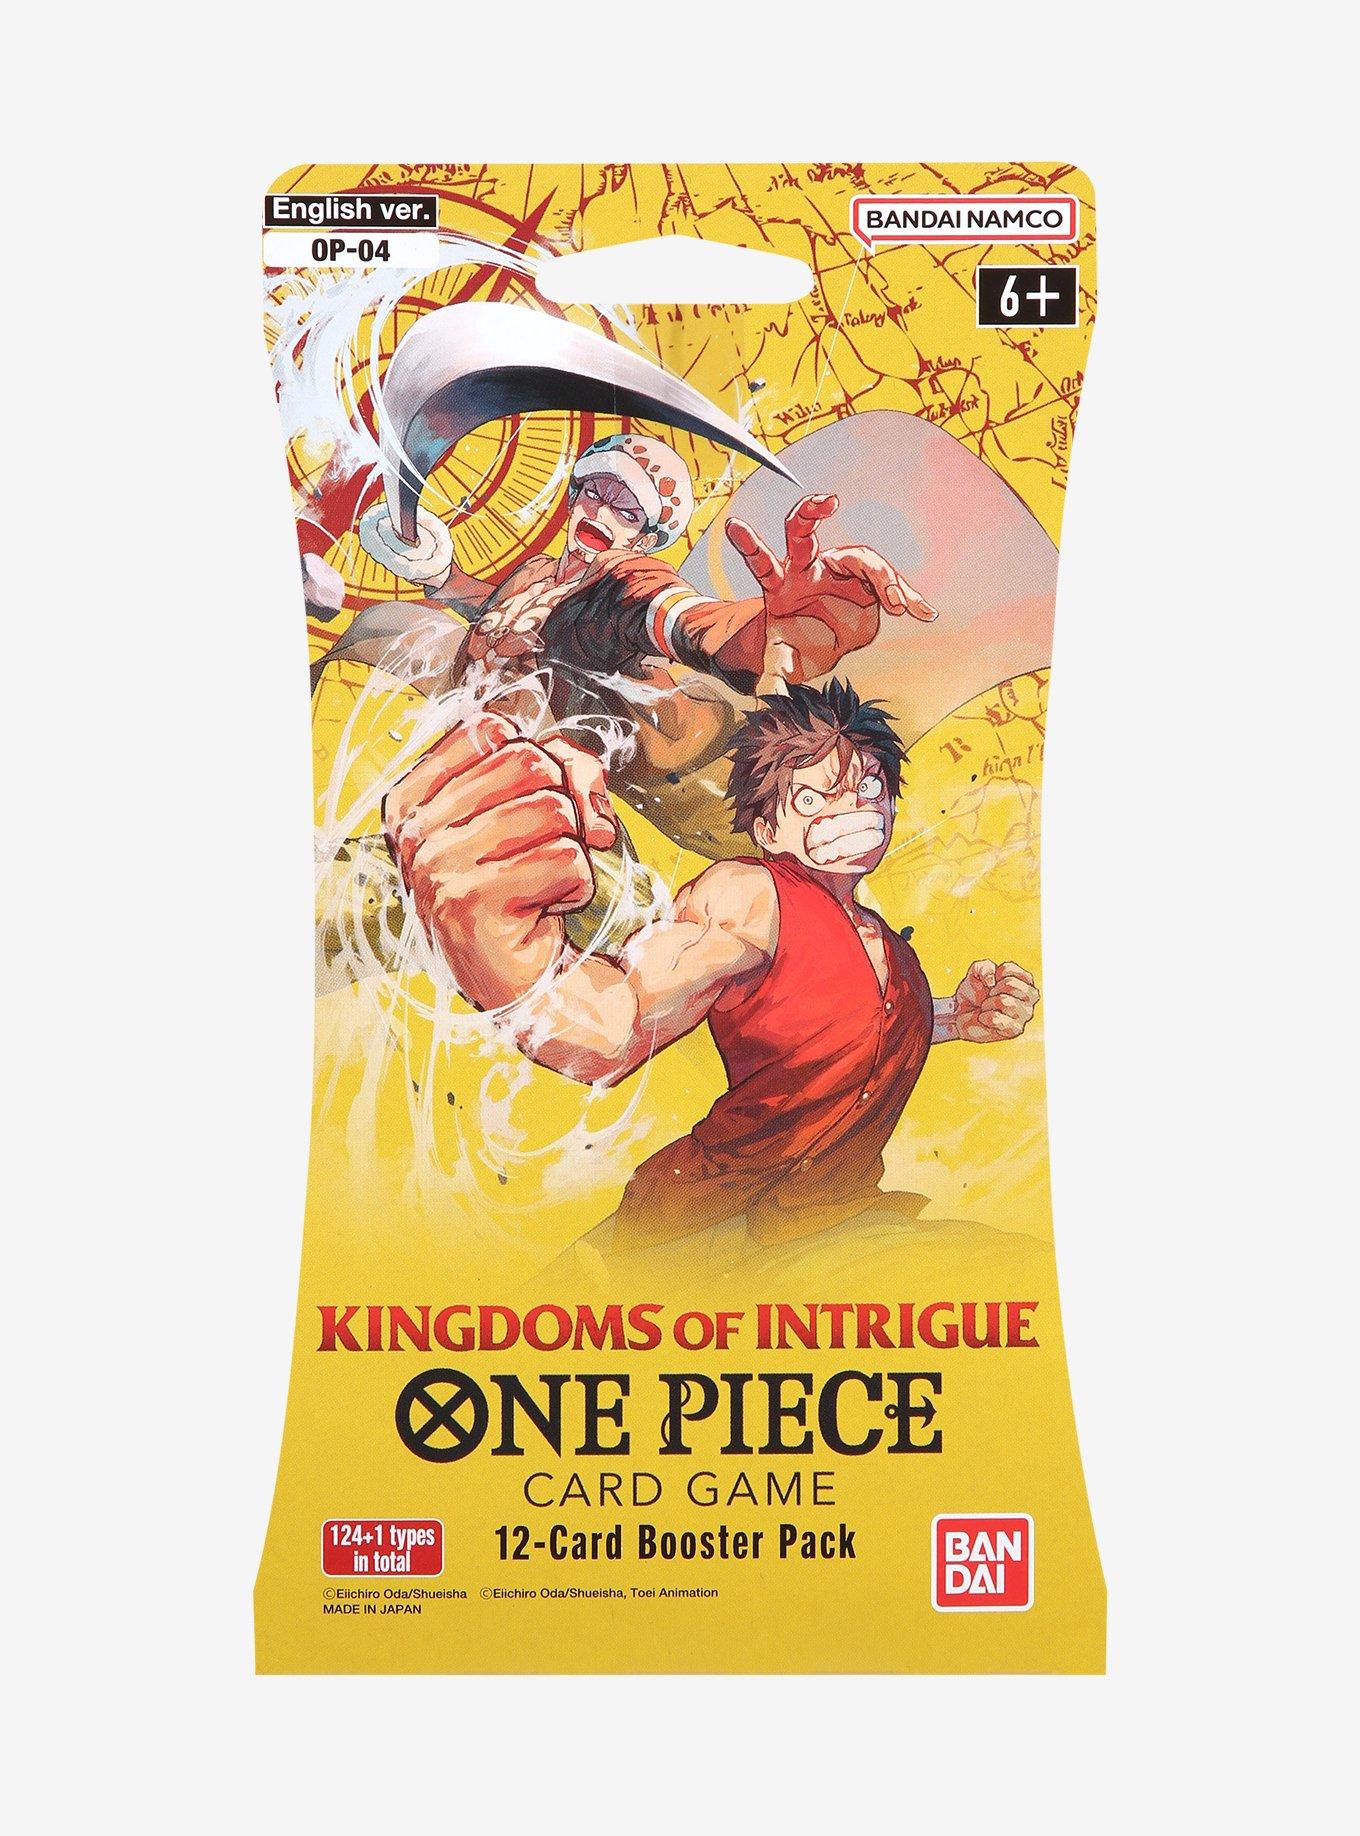 Category:One Piece games, Nintendo